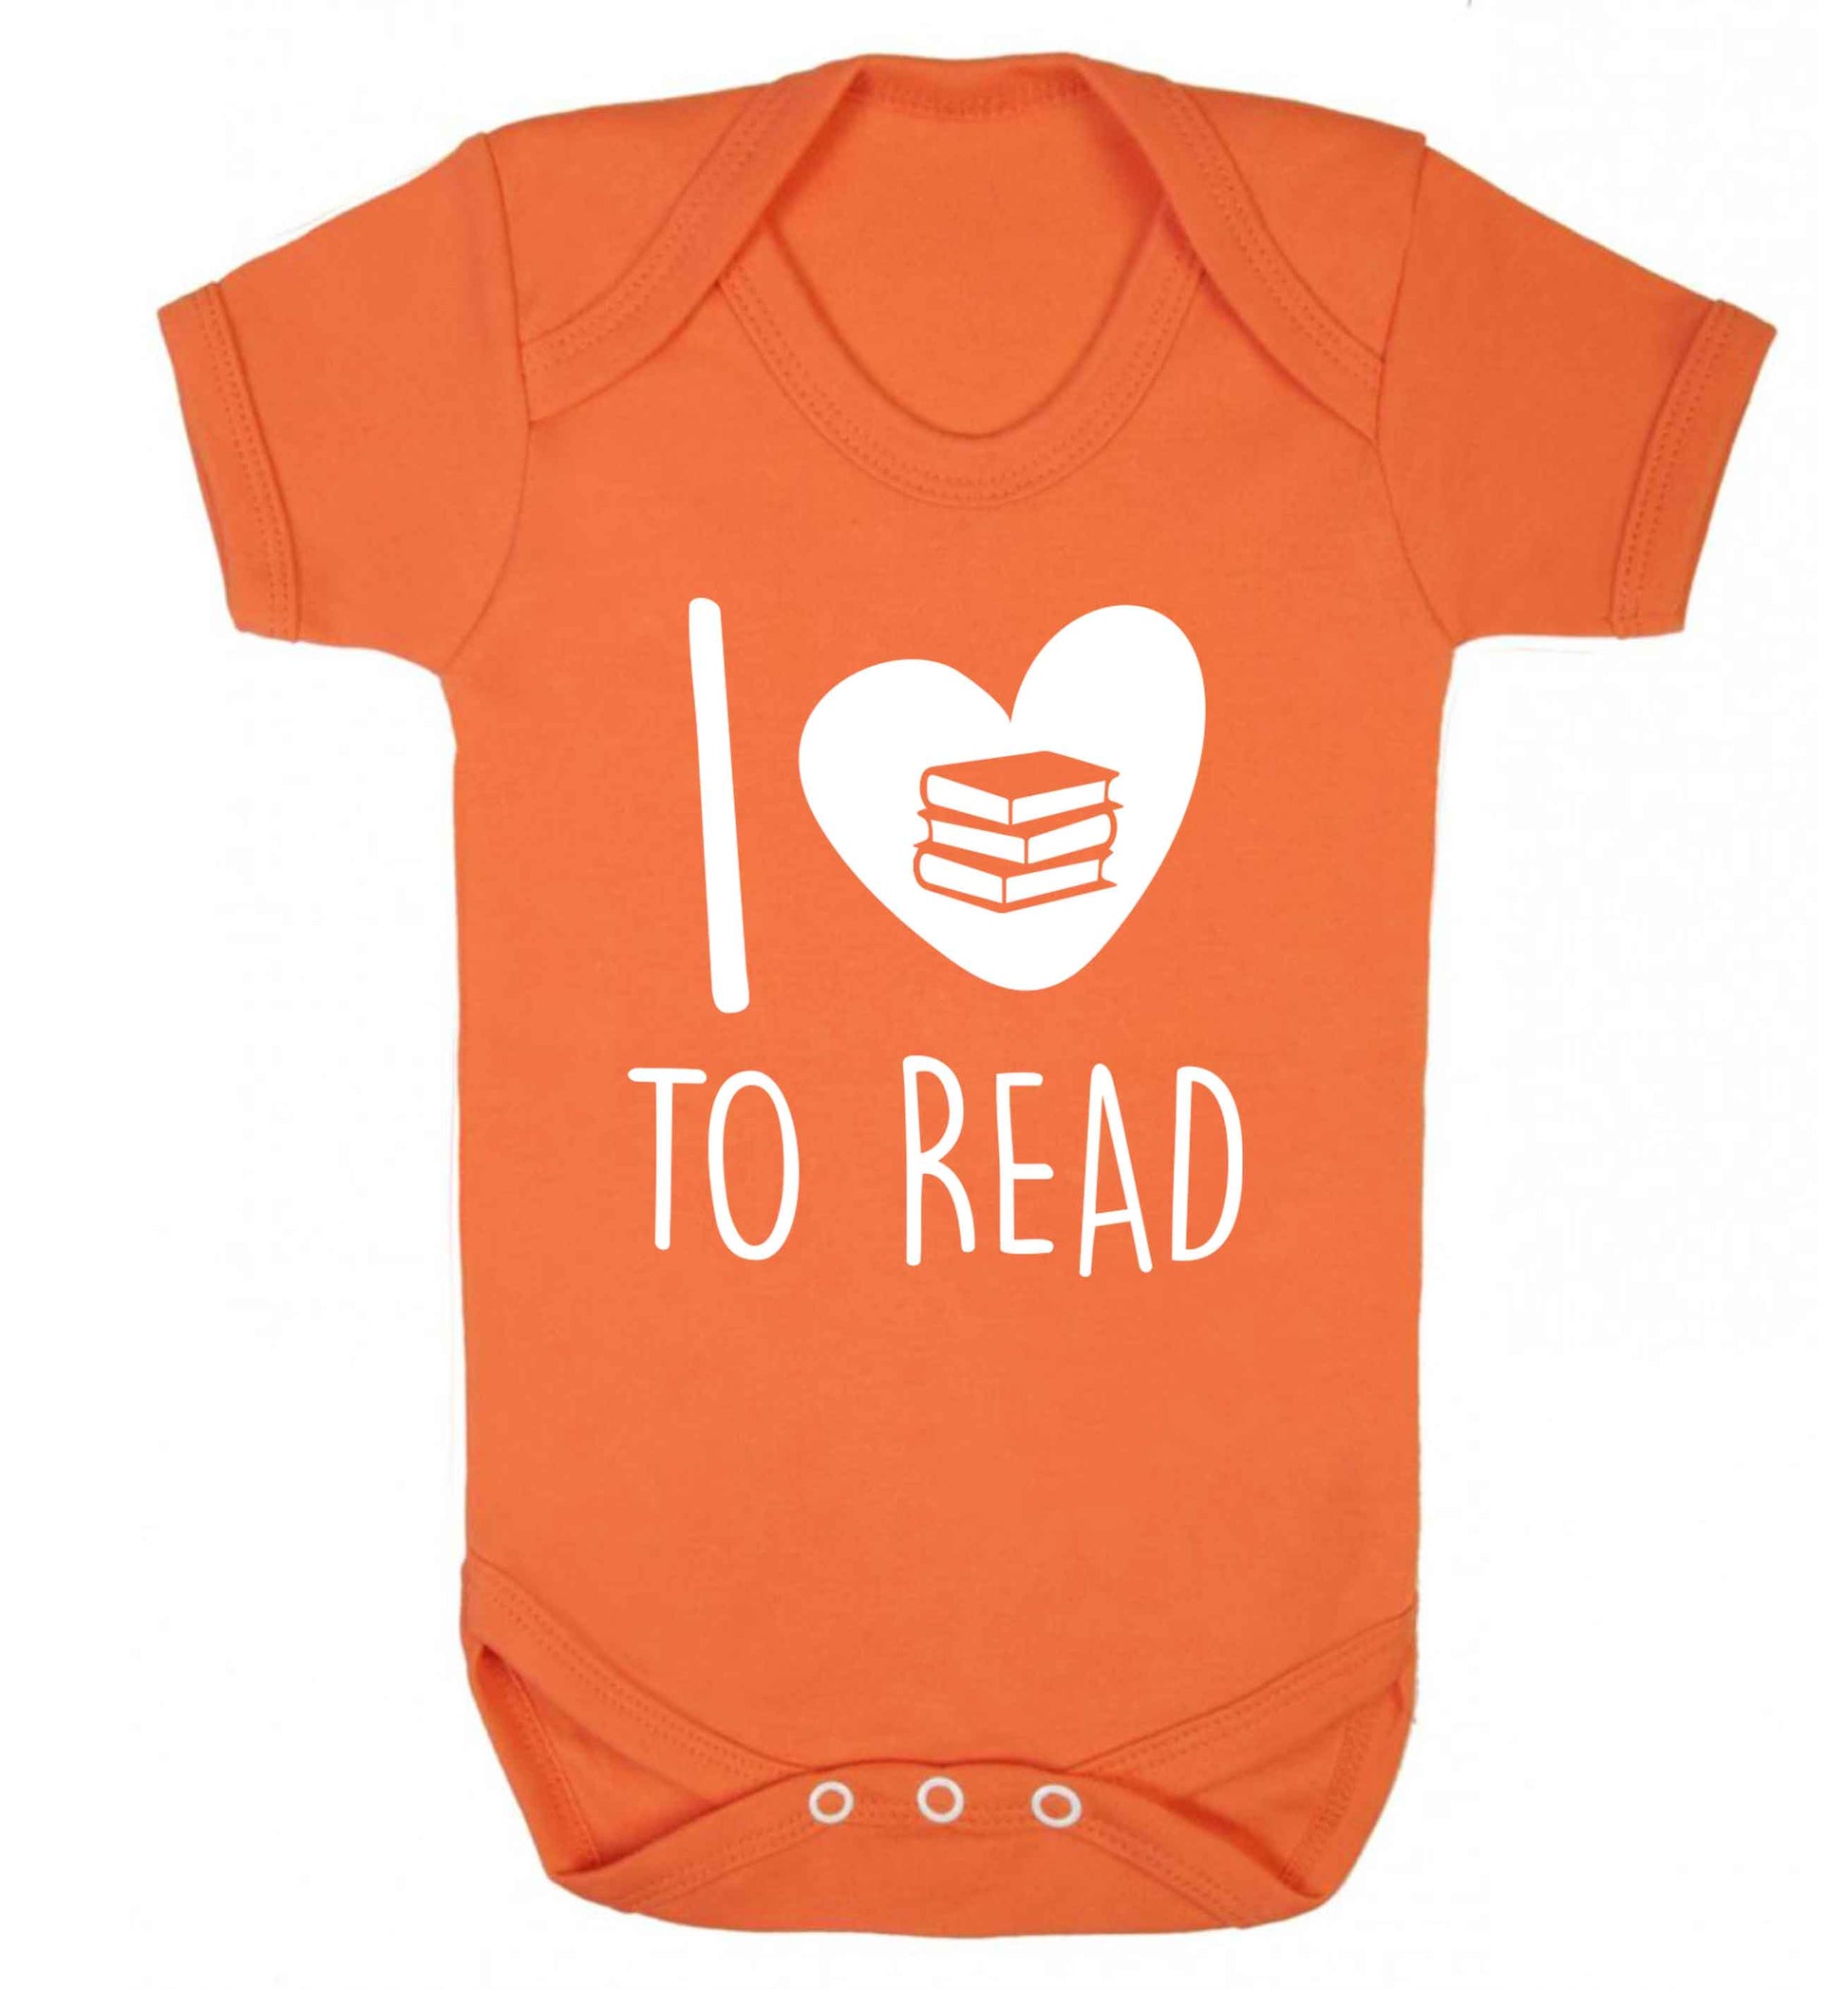 I love to read Baby Vest orange 18-24 months